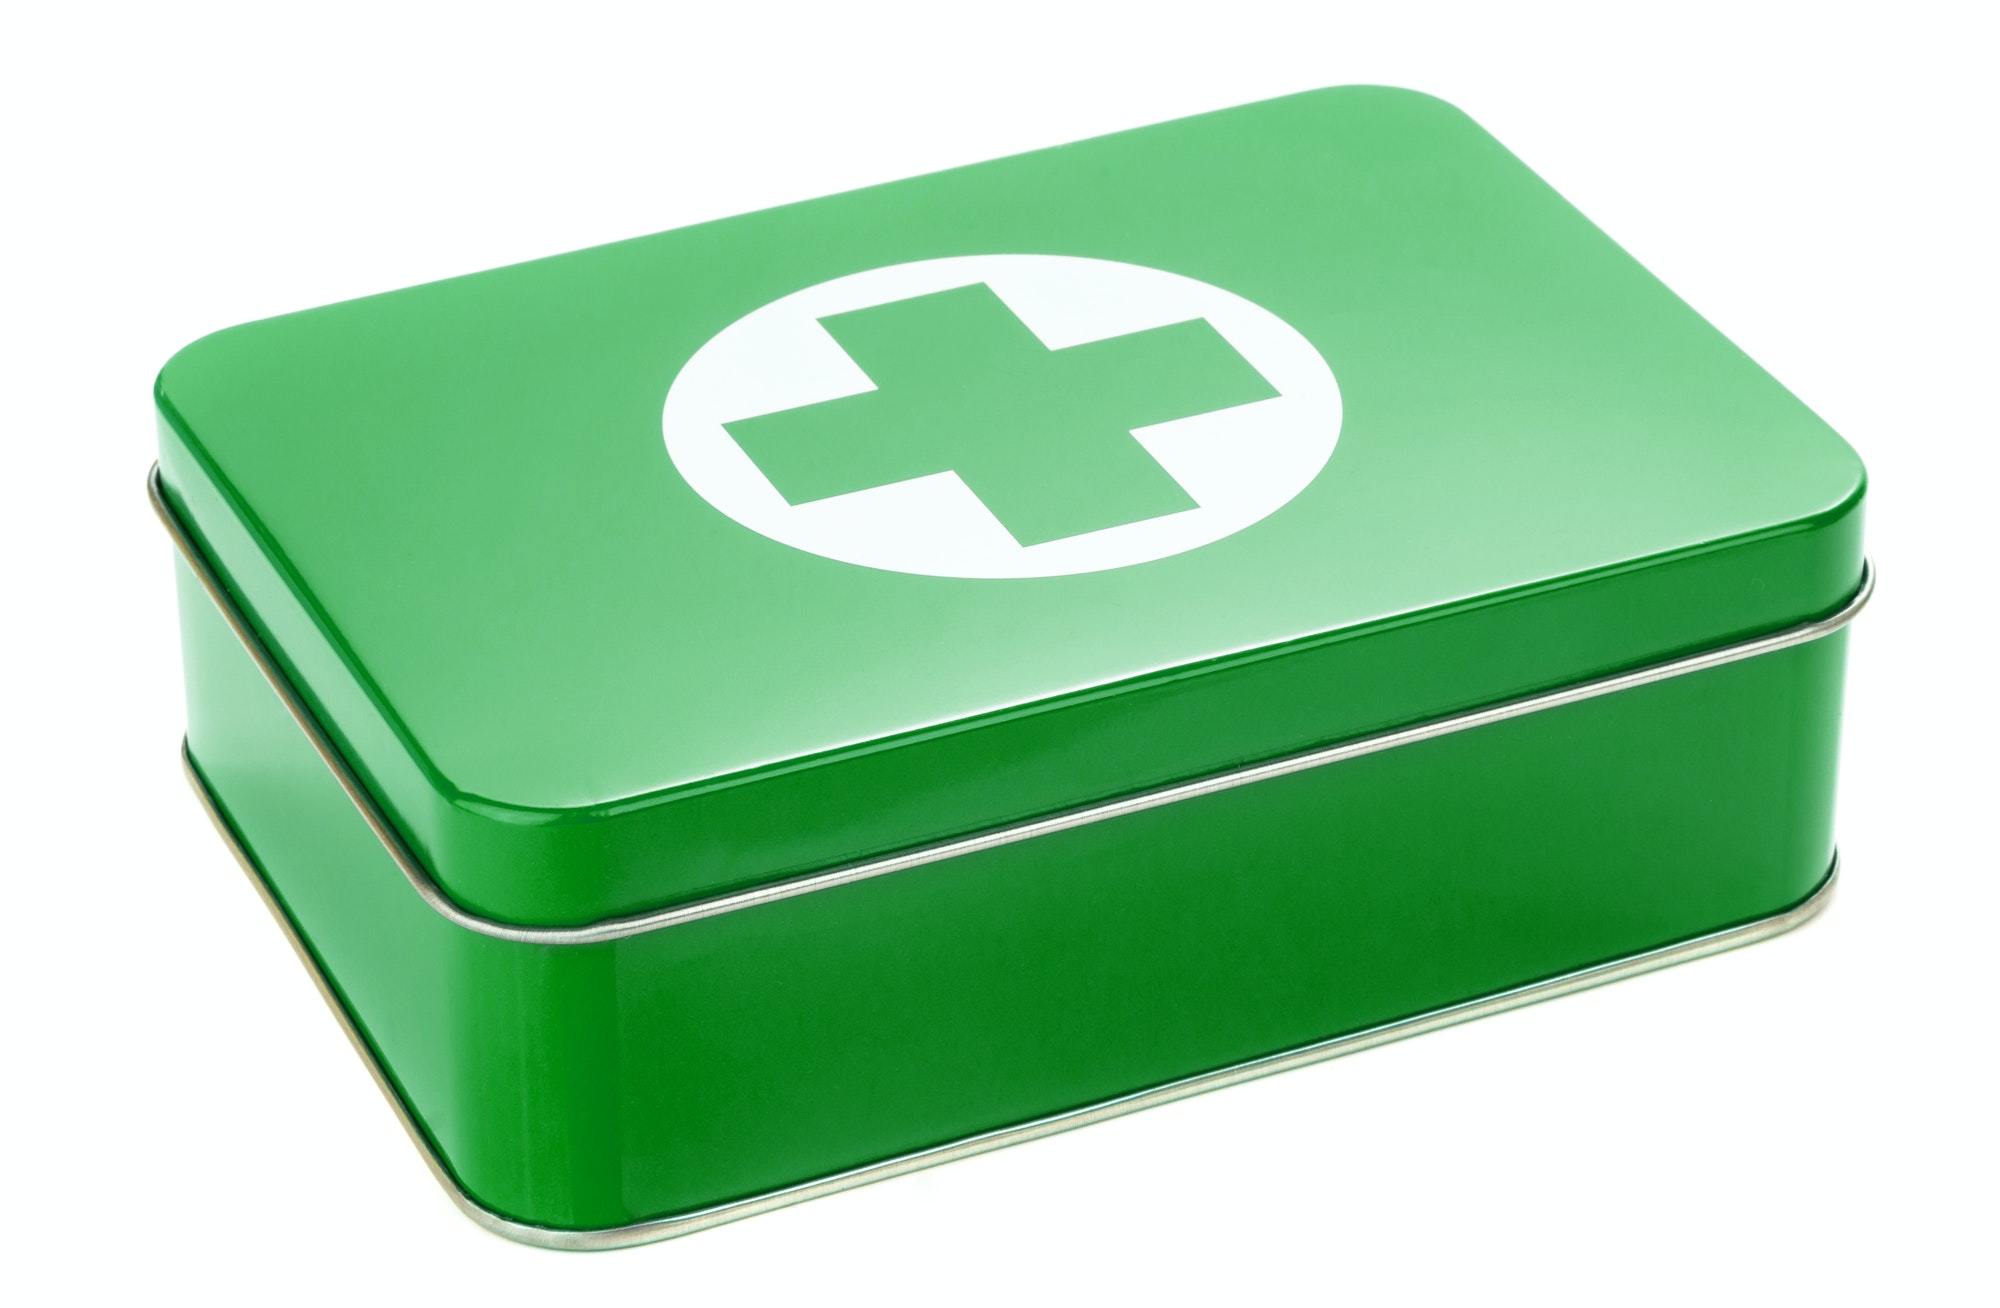 A First Aid Box